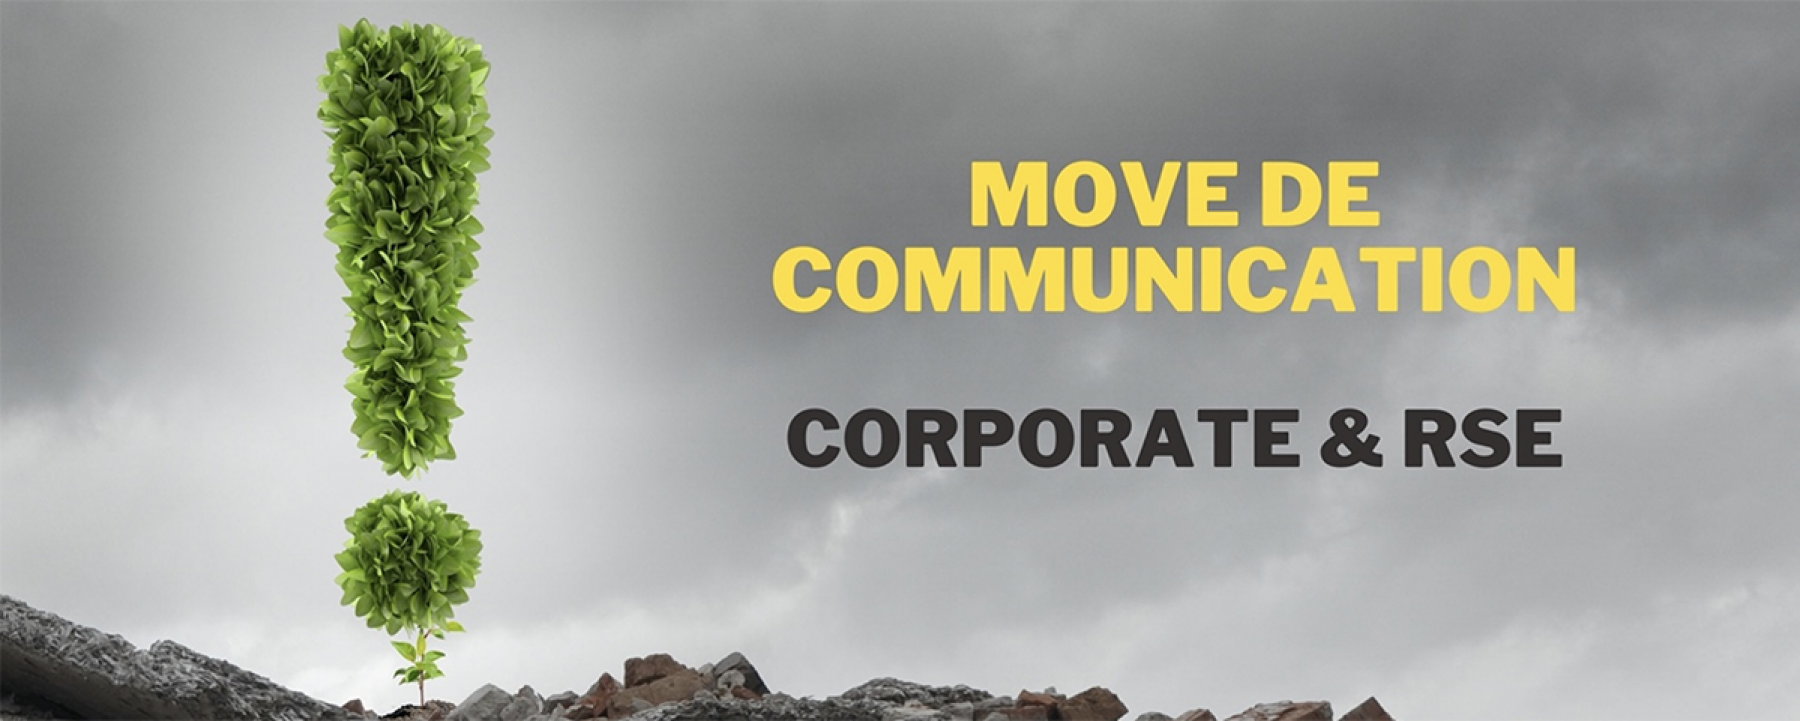 Move de Communication - Corporate & RSE , un événement en ligne organisé par le Club des Annonceurs le 9 février 2021